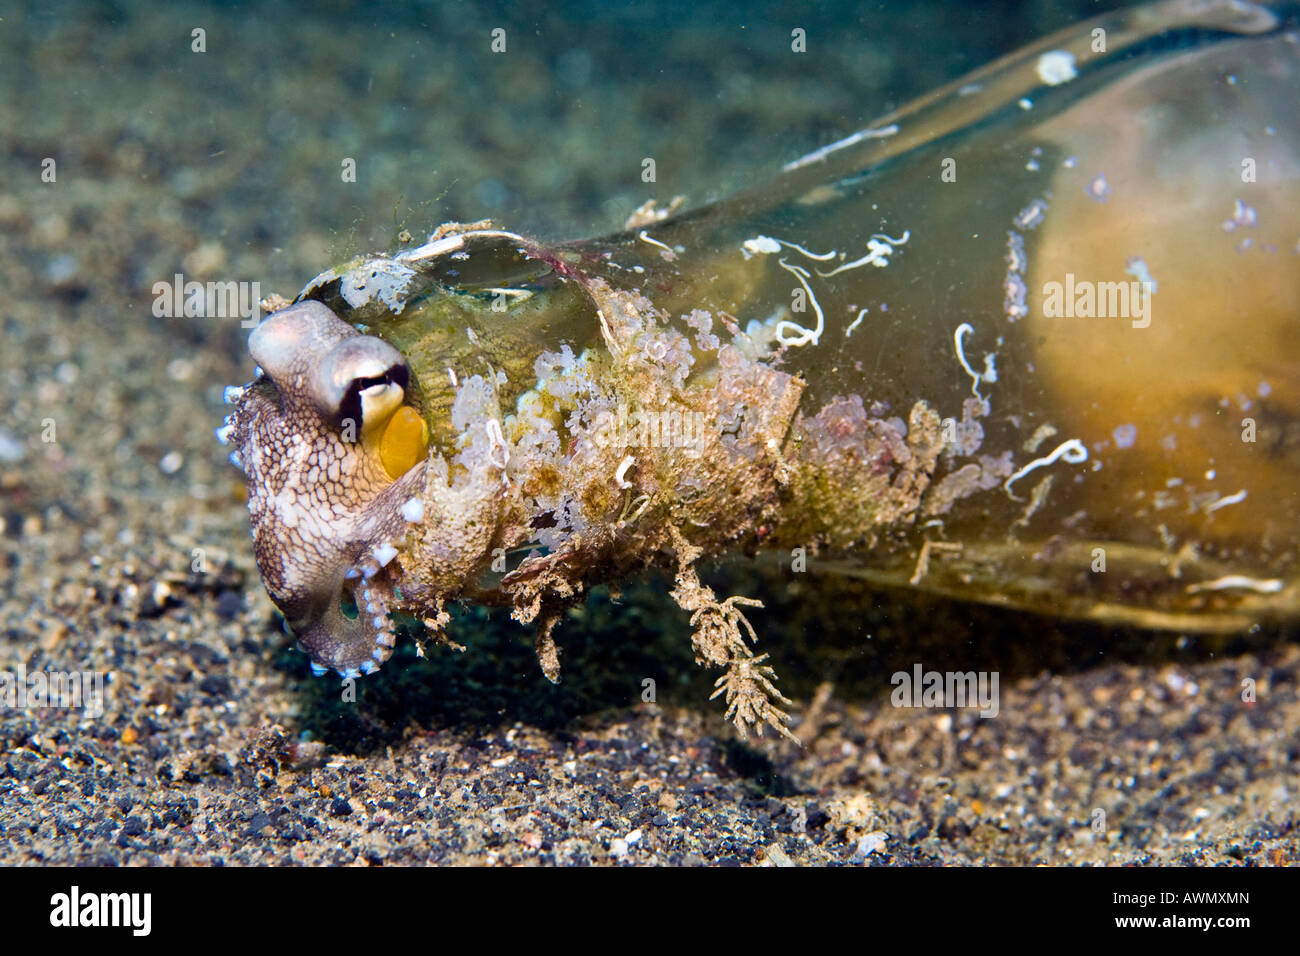 Poulpe persillés ou noix de coco Poulpe (Octopus marginatus) à se cacher dans une vieille bouteille de Coca Cola, l'Indonésie, l'Asie Banque D'Images